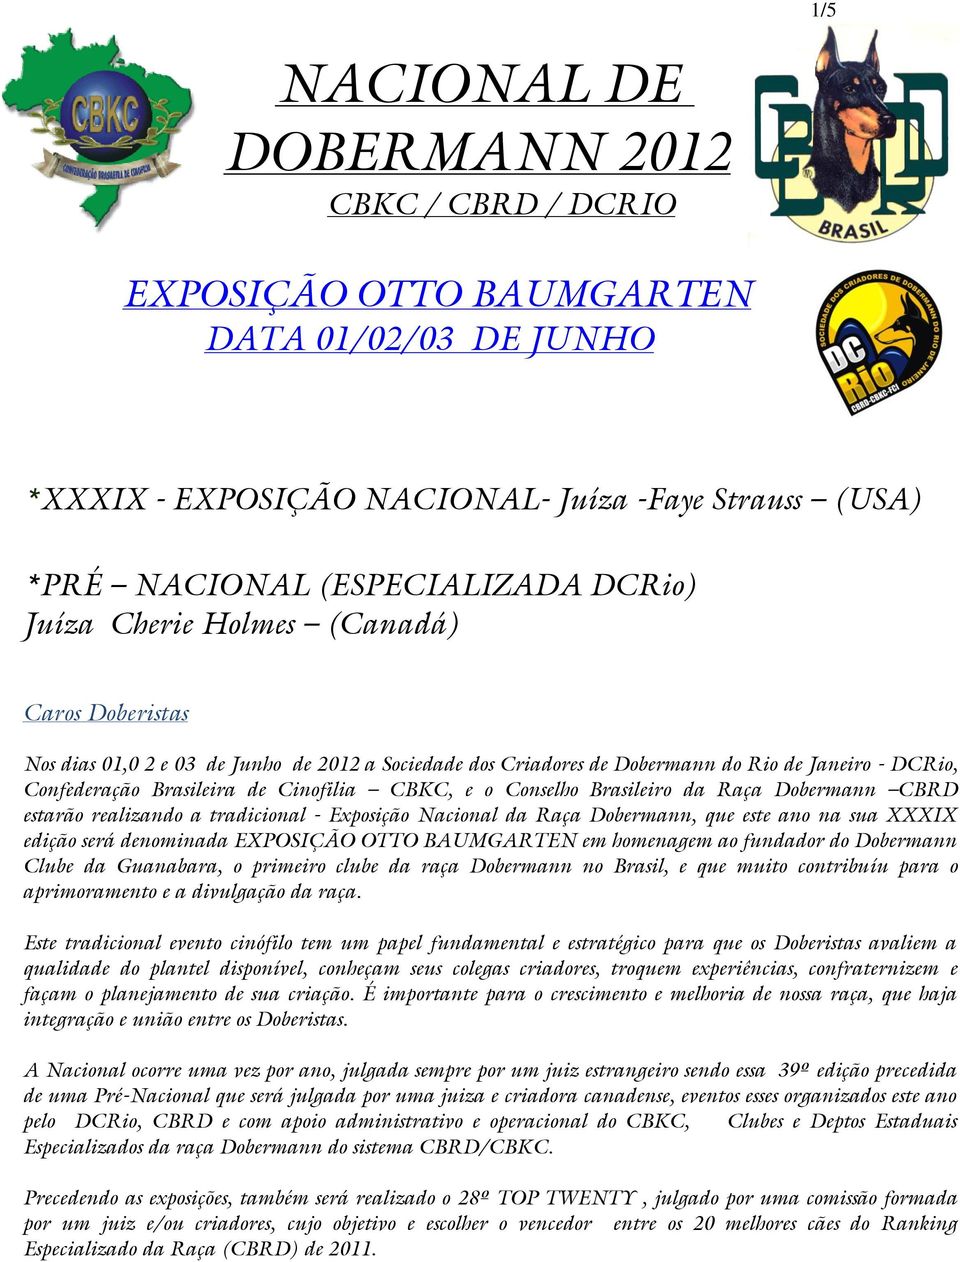 Brasileiro da Raça Dobermann CBRD estarão realizando a tradicional - Exposição Nacional da Raça Dobermann, que este ano na sua XXXIX edição será denominada EXPOSIÇÃO OTTO BAUMGARTEN em homenagem ao